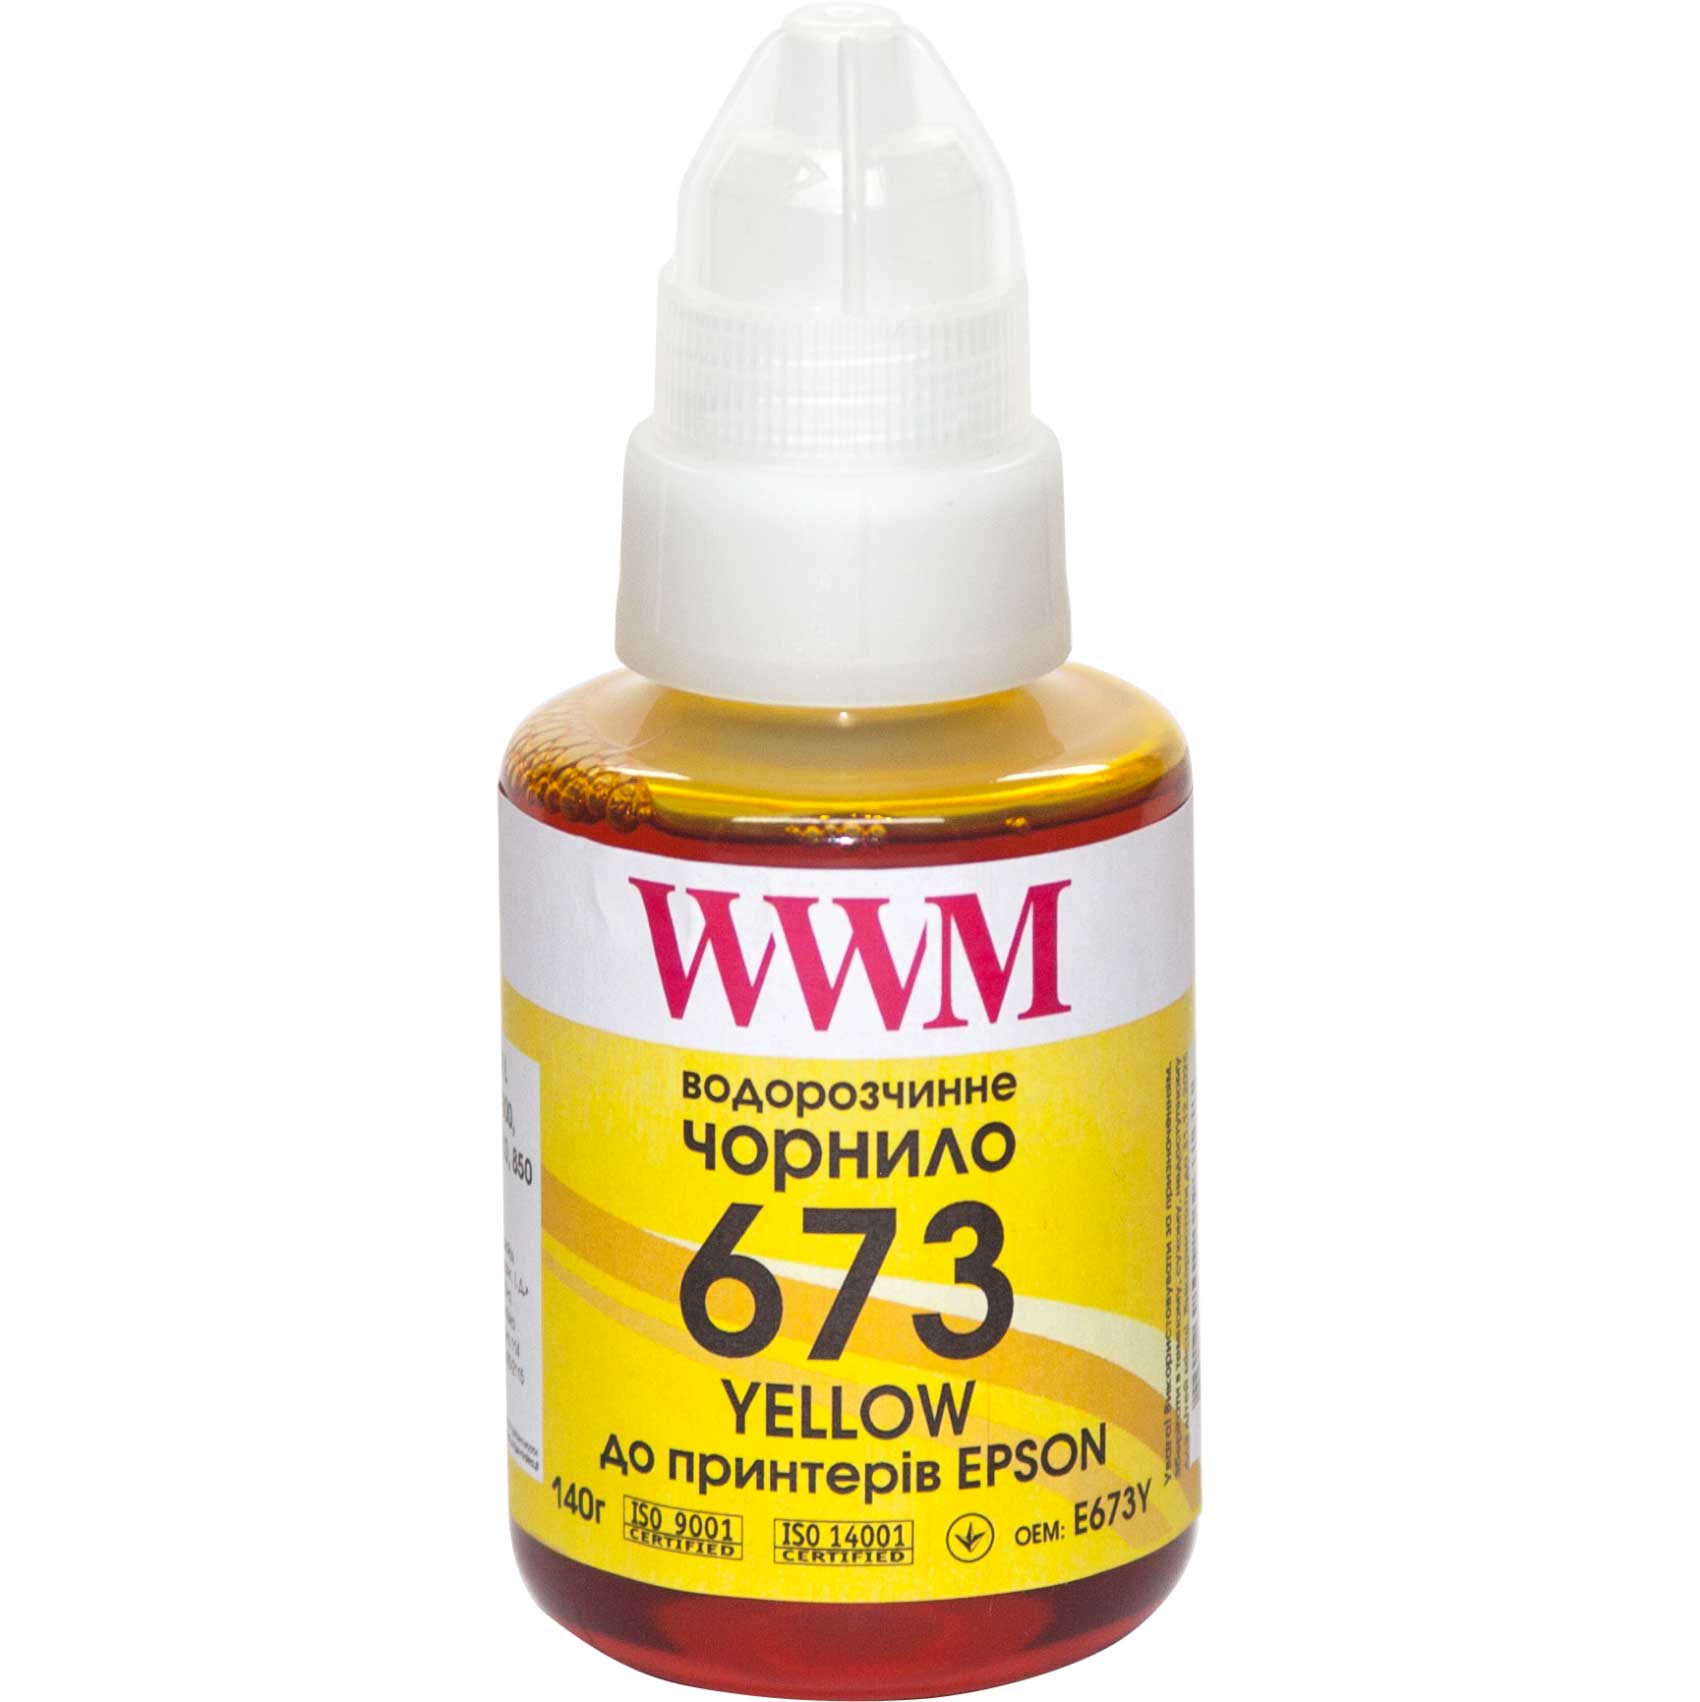 Чорнило WWM 673 для Epson L800/L805/L810/L850/ L1800 (Yellow) 140ml | Купити в інтернет магазині